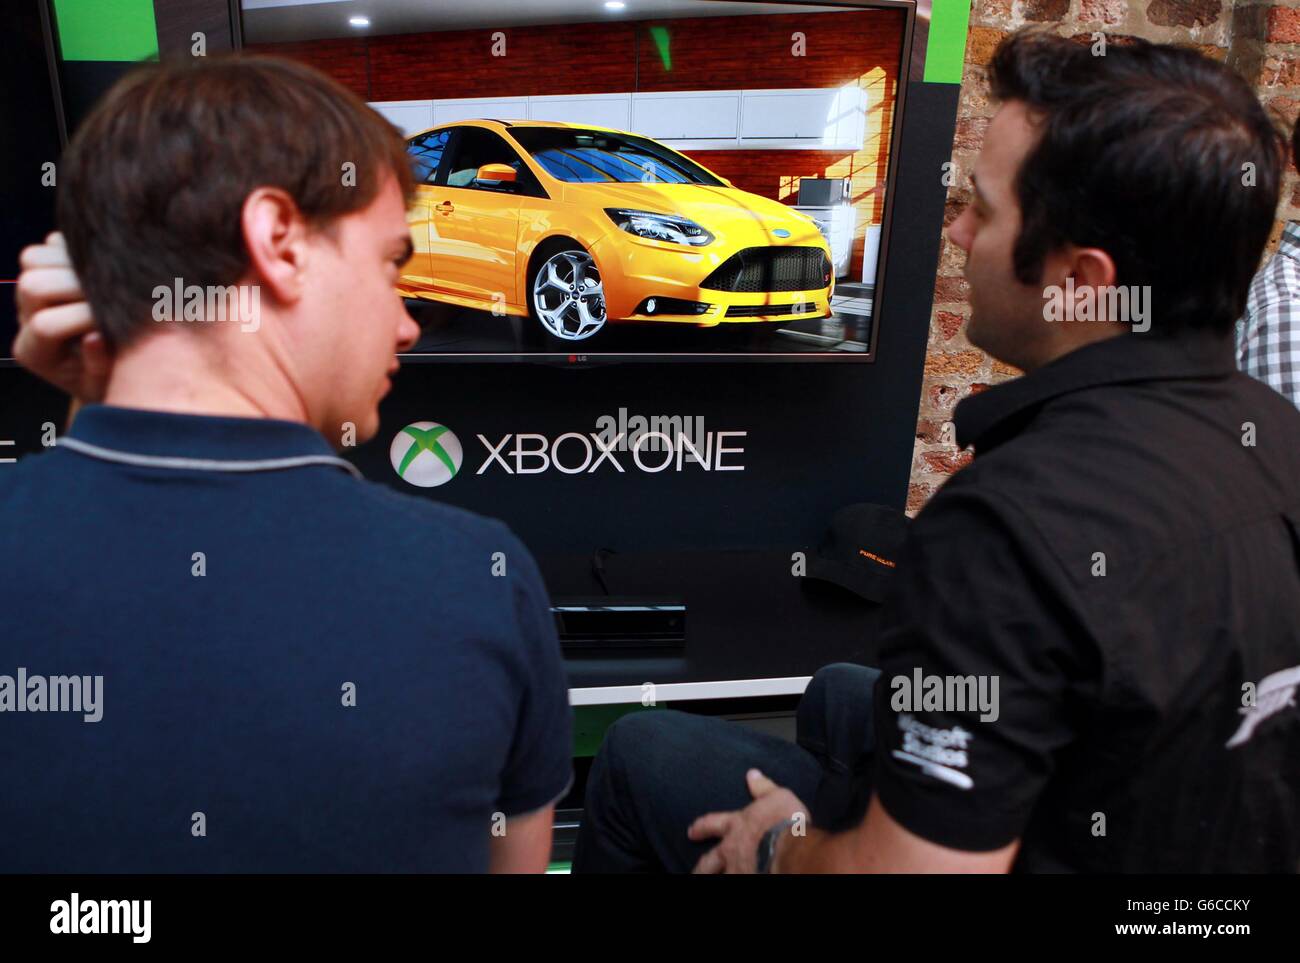 Les gens jouent sur la Xbox One, à l'usine de violon dans le sud de Londres, avant la sortie des consoles en novembre. Banque D'Images